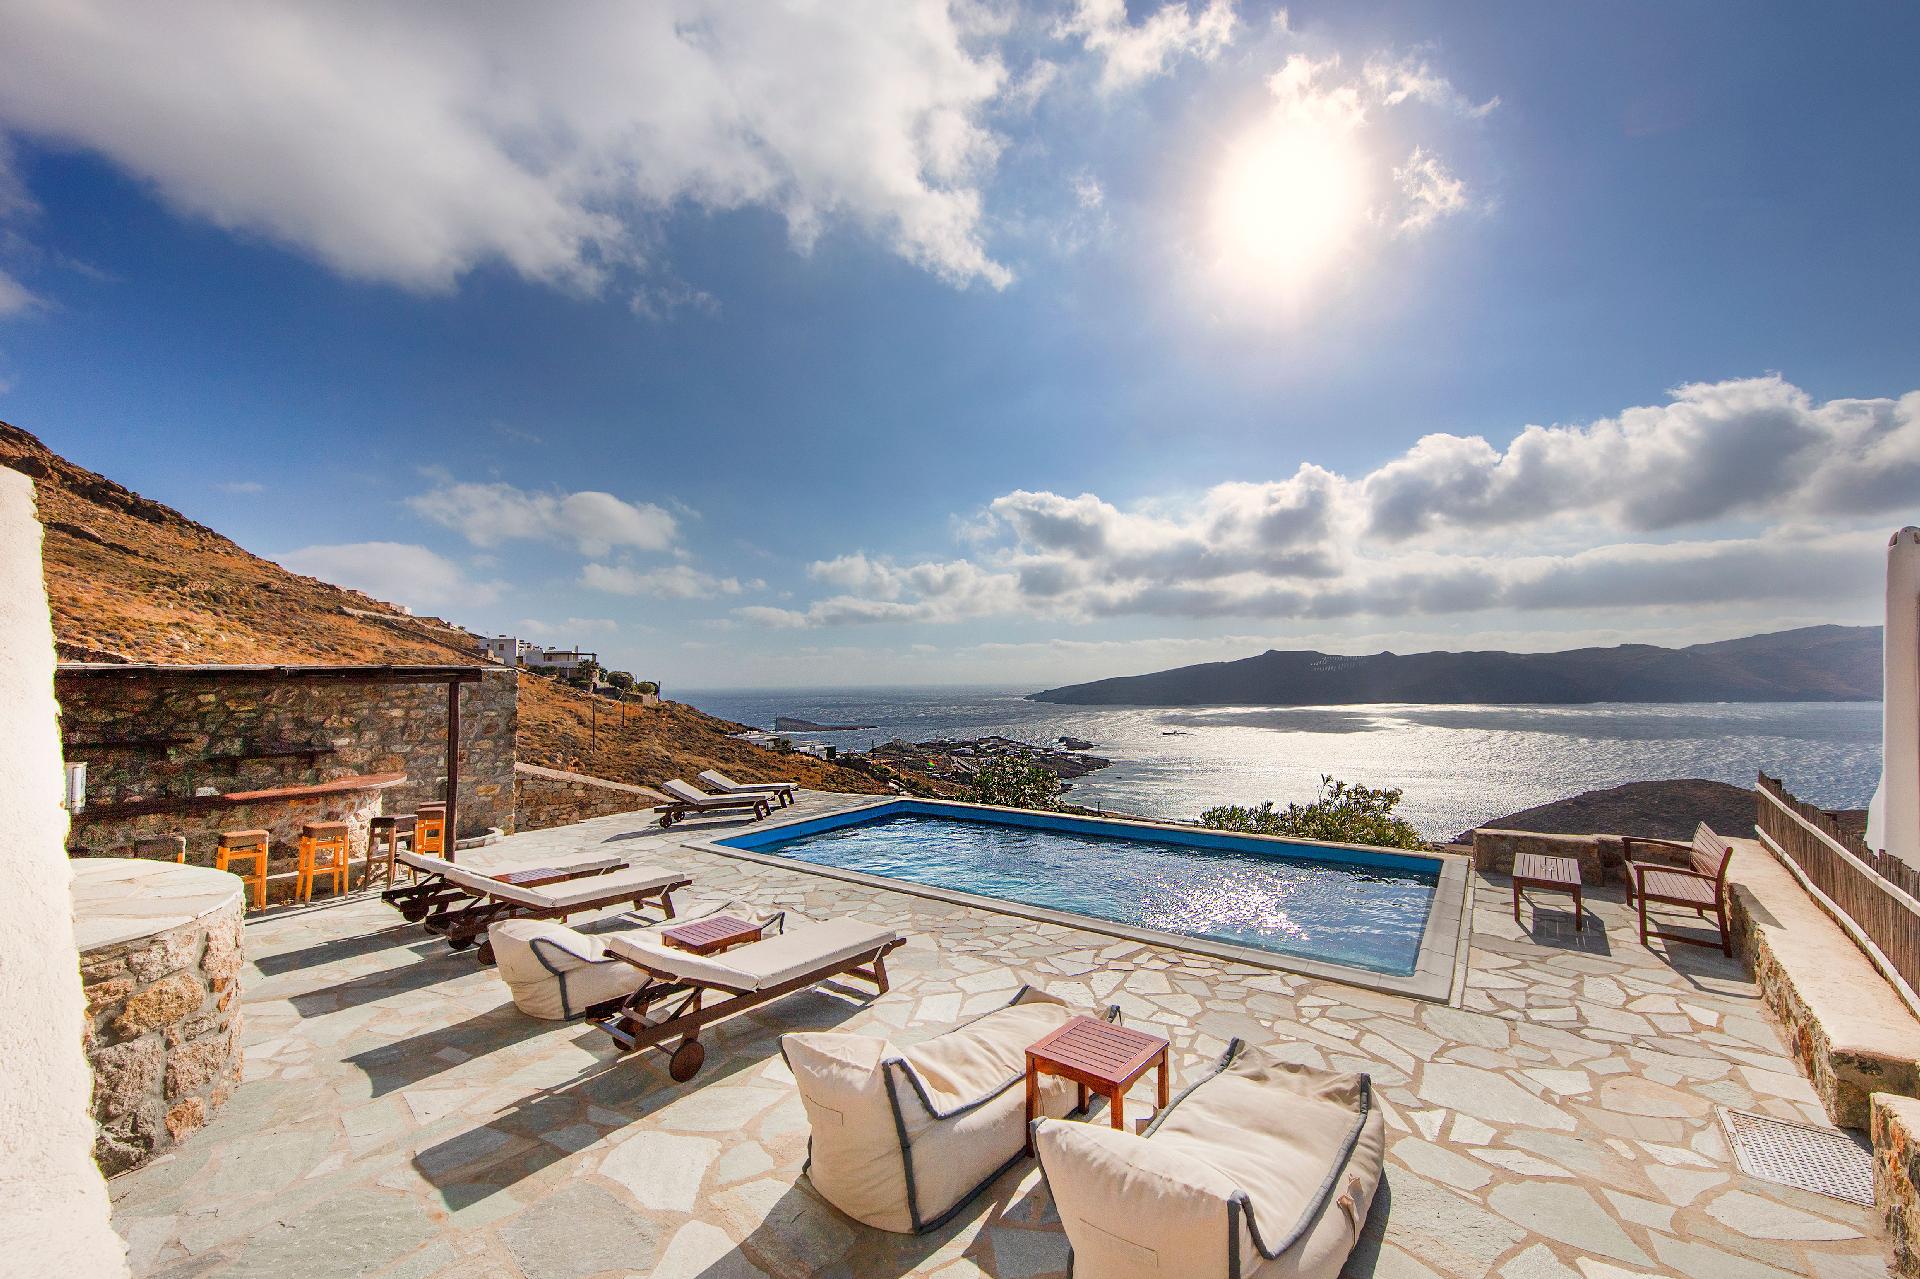 Ferienhaus mit Privatpool für 12 Personen ca. Ferienhaus in Griechenland